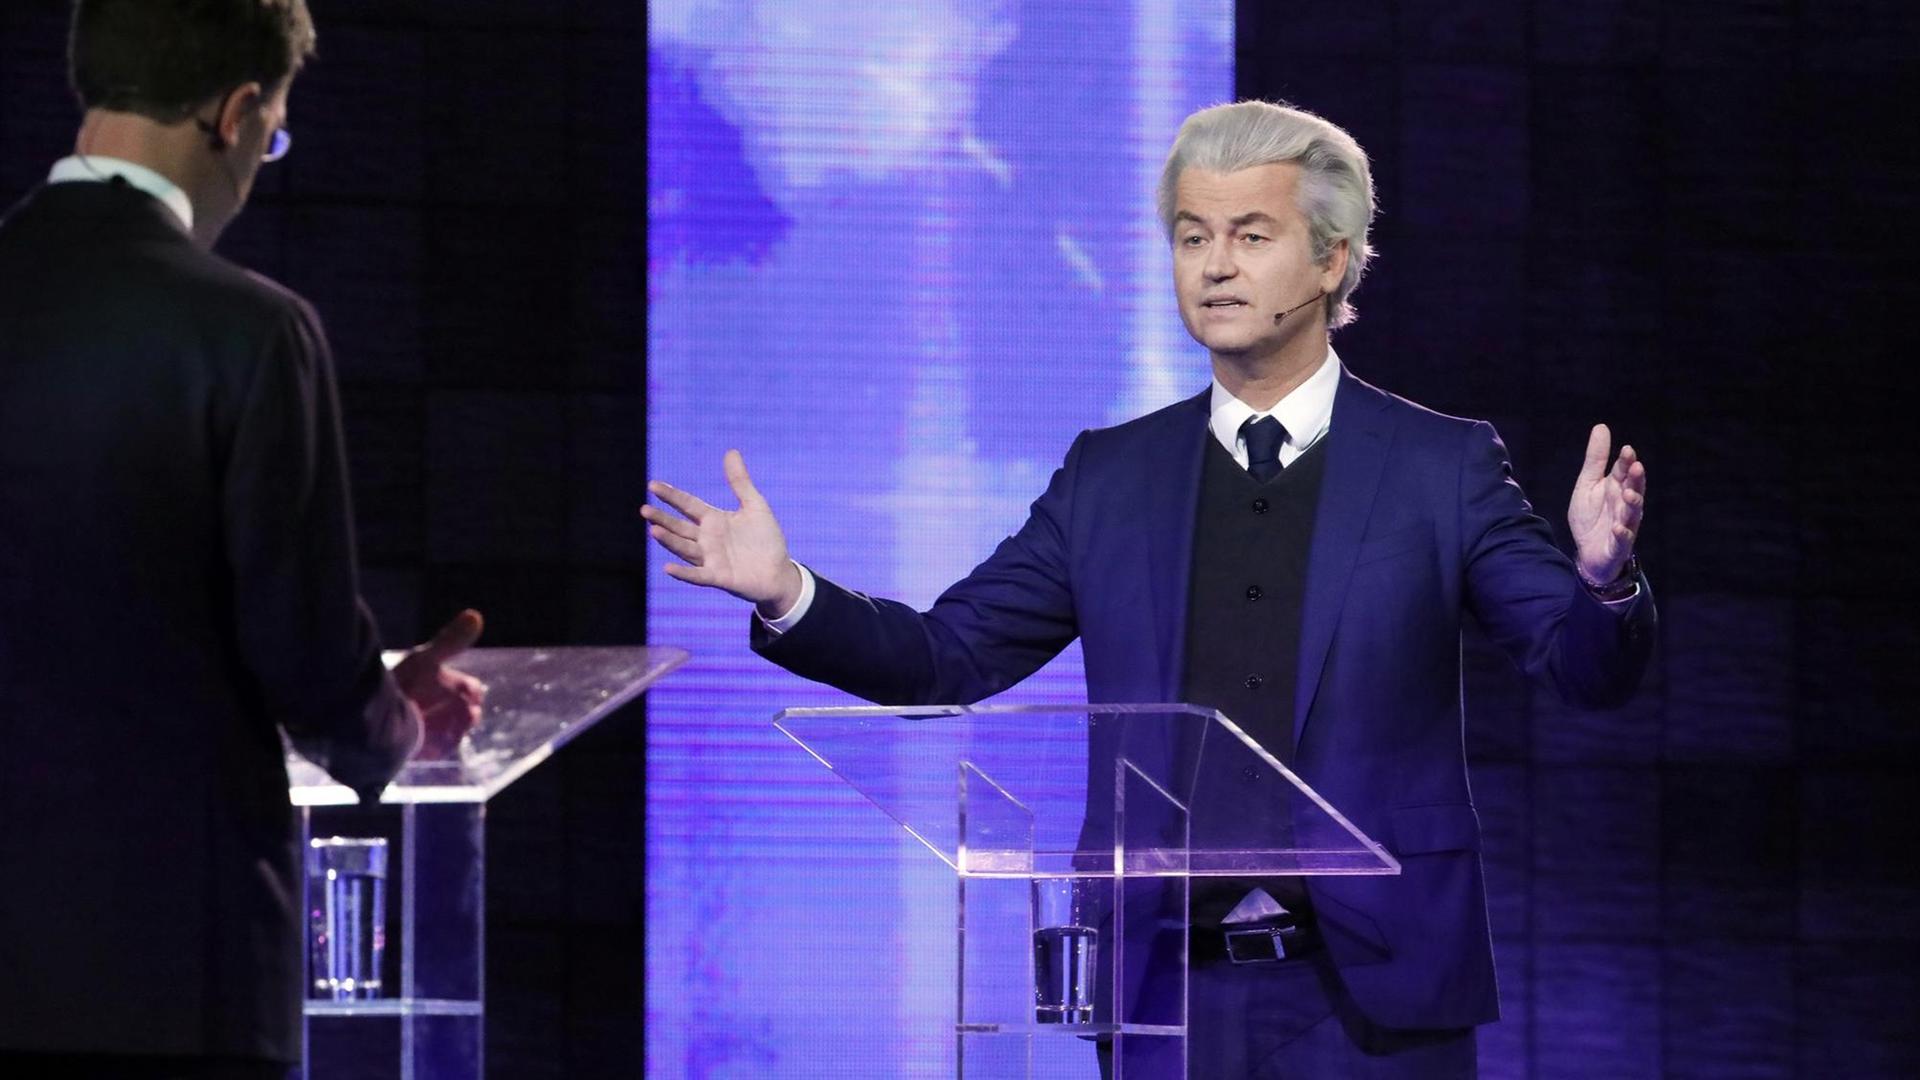 Der PVV-Vorsitzende Wilders und Ministerpräsident Rutte in einer TV-Debatte (13.03.17)